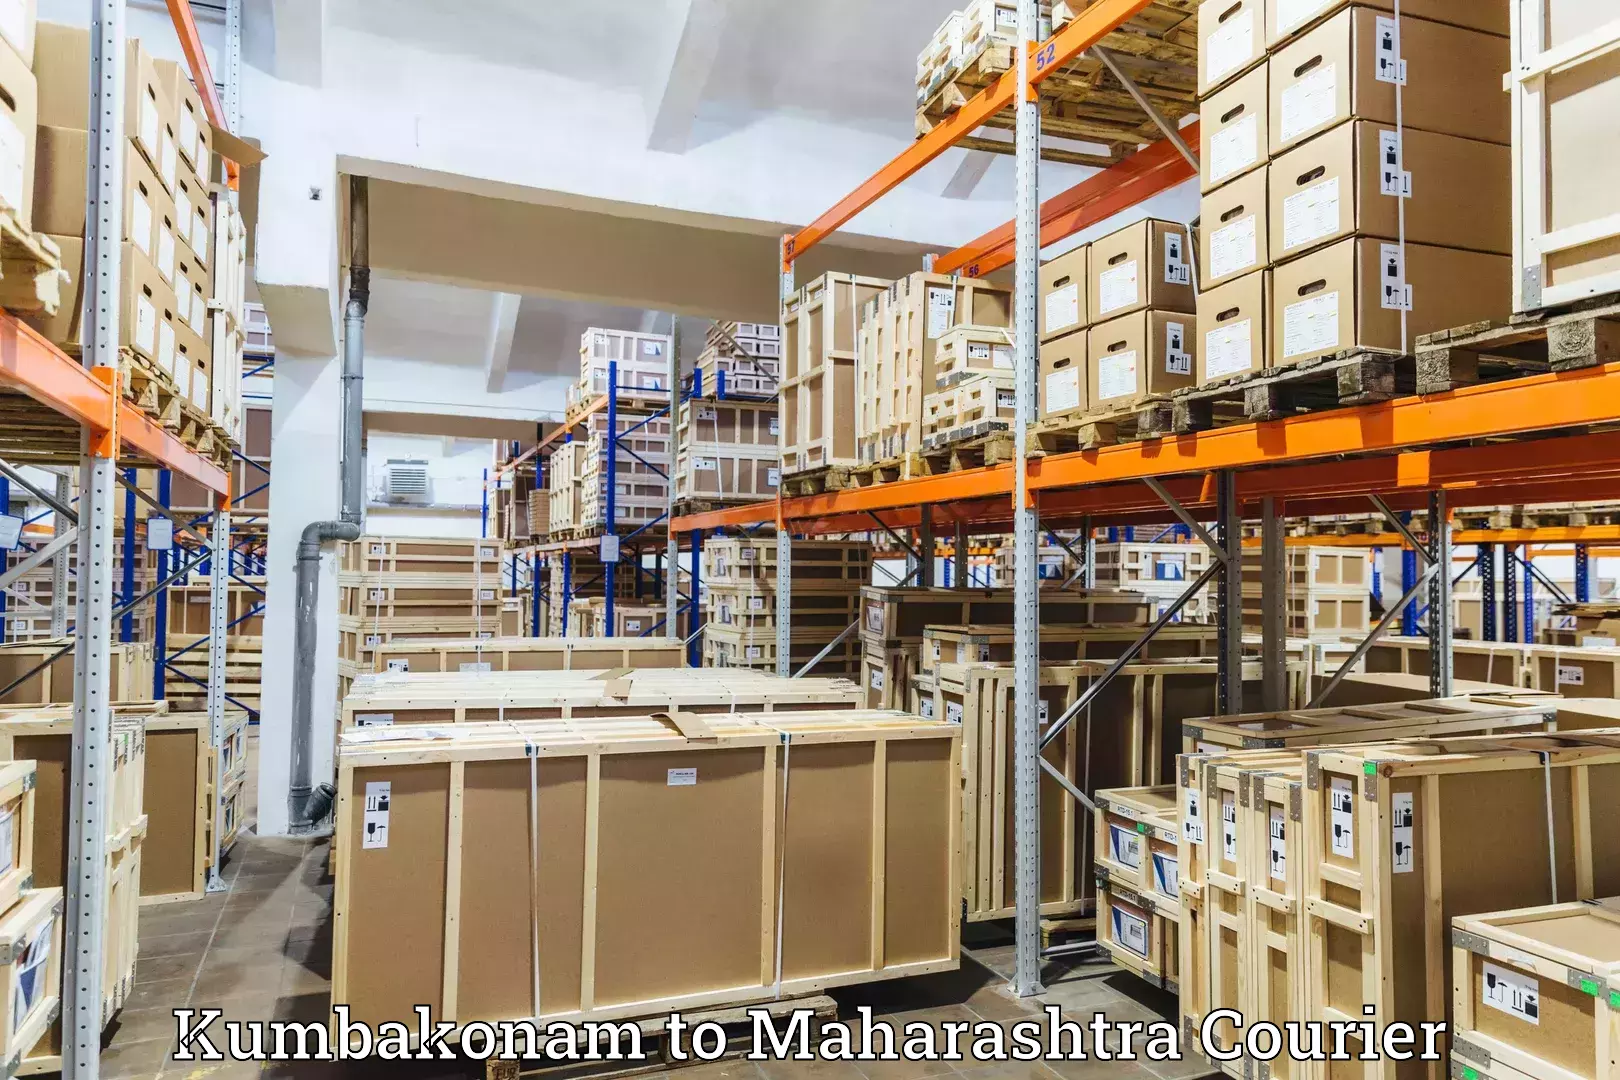 Global shipping solutions Kumbakonam to Maharashtra